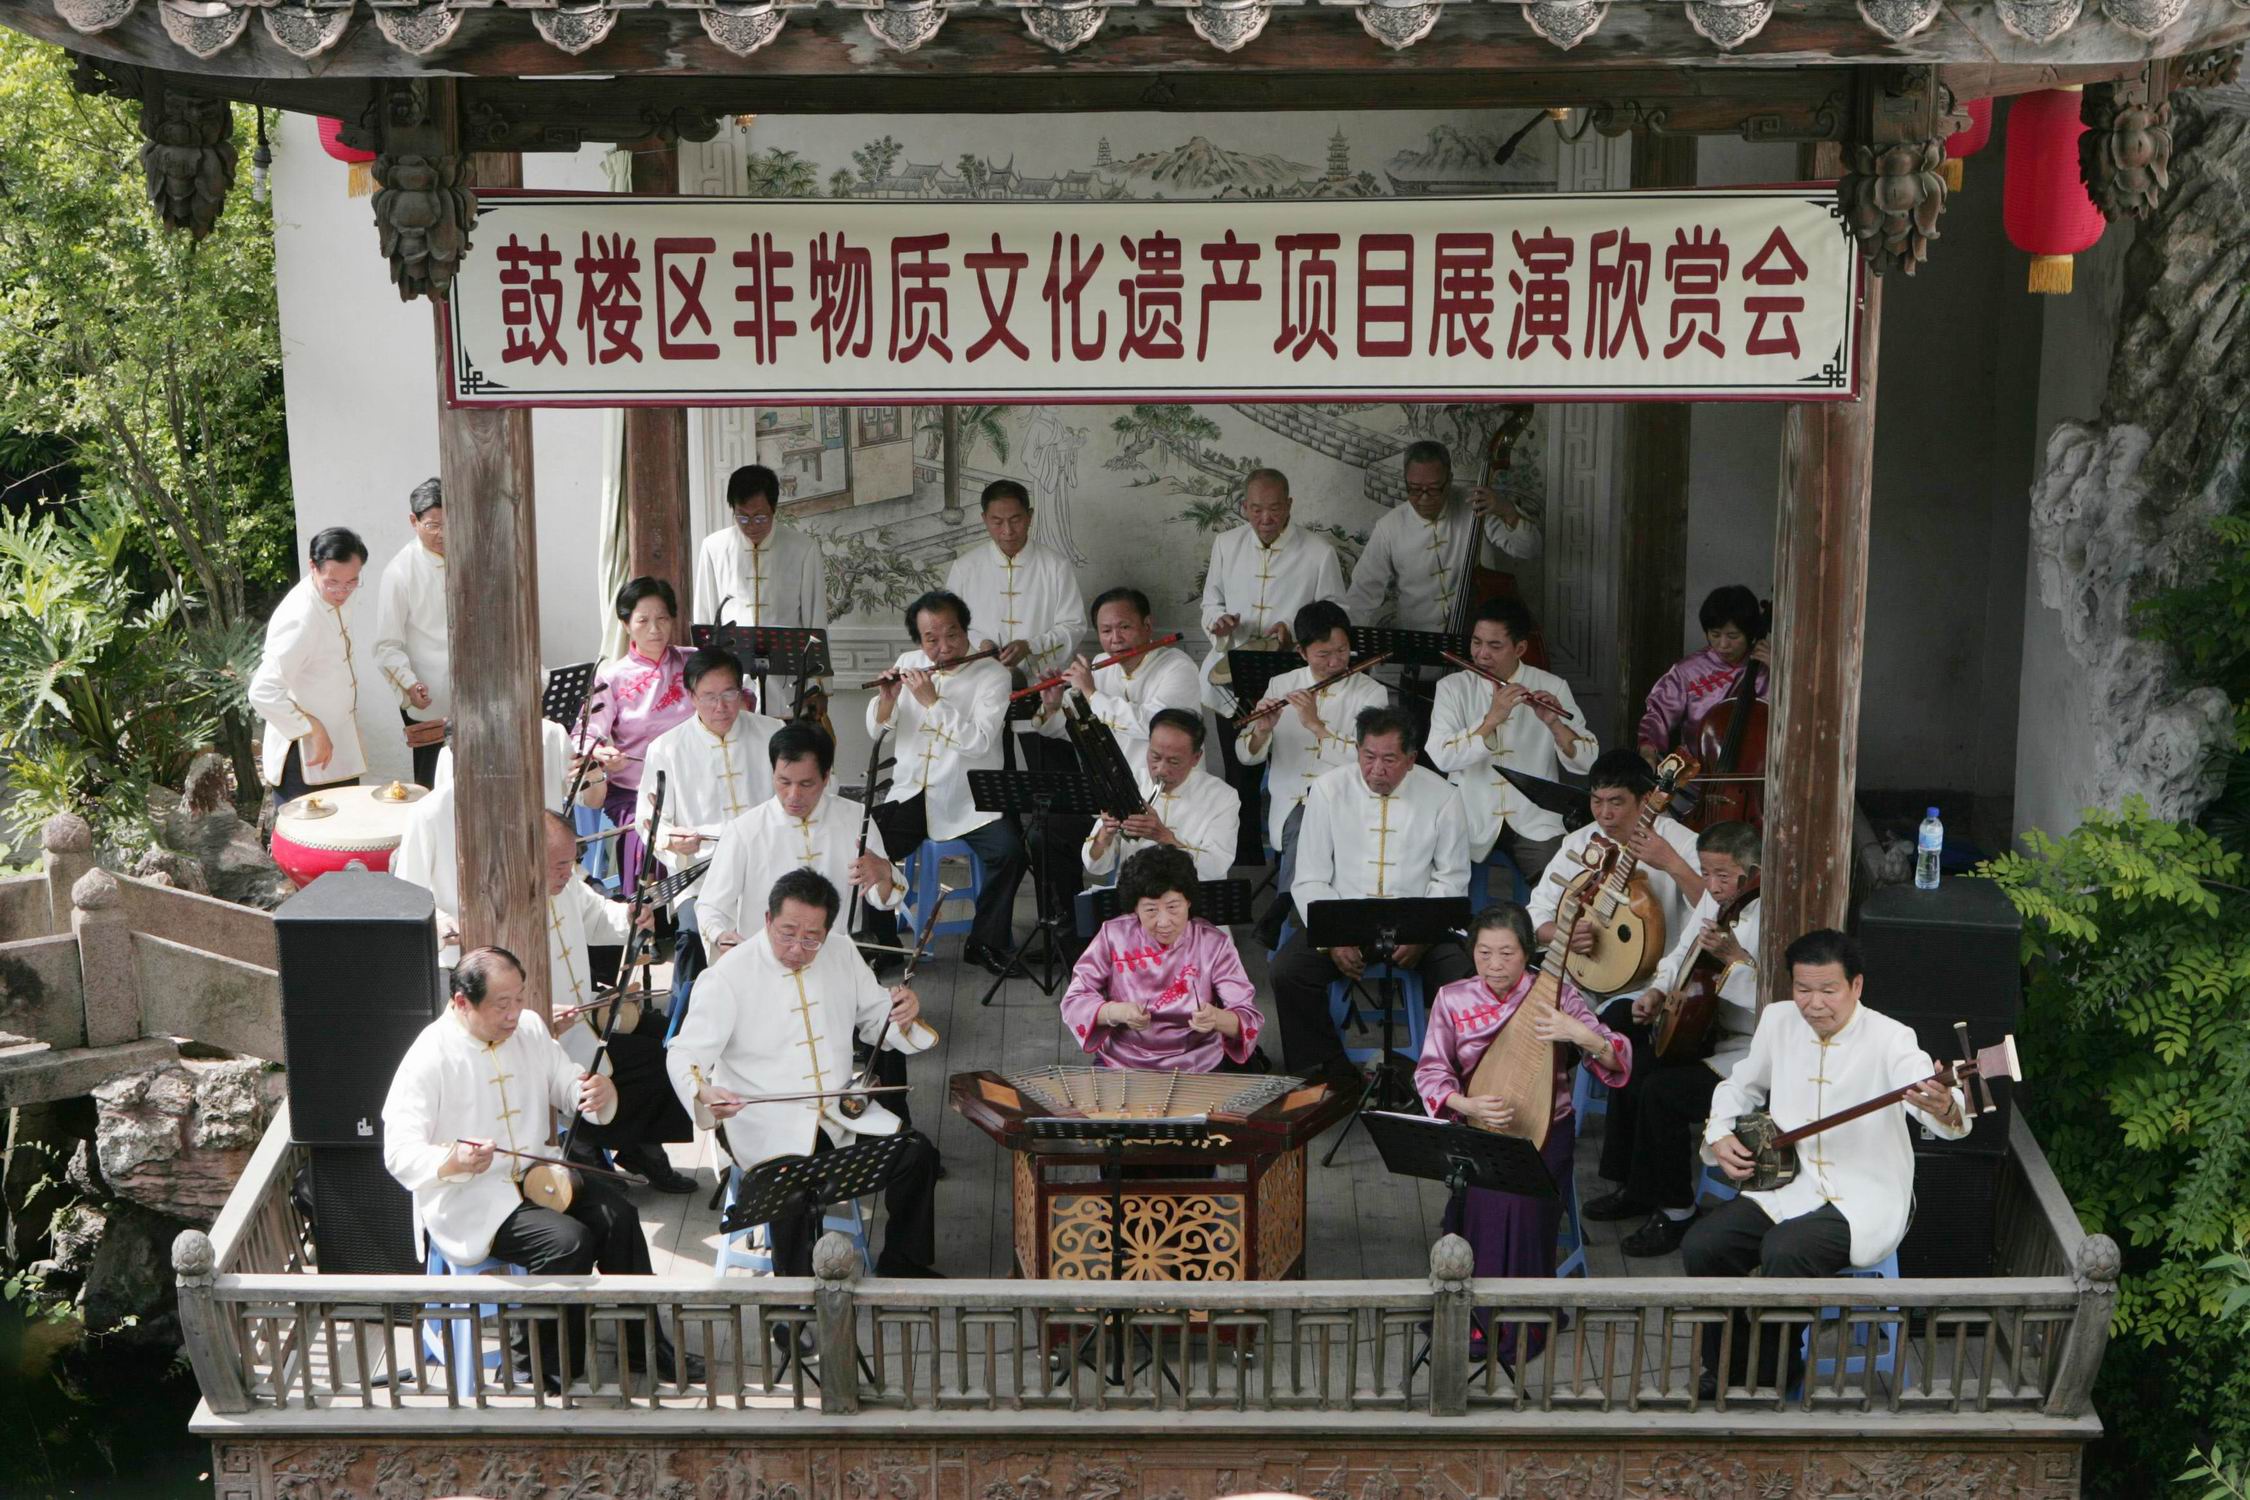 2，文化遗产日，老艺人们在水榭戏台为观众们合奏十番音乐《石鼓泉涌》.jpg